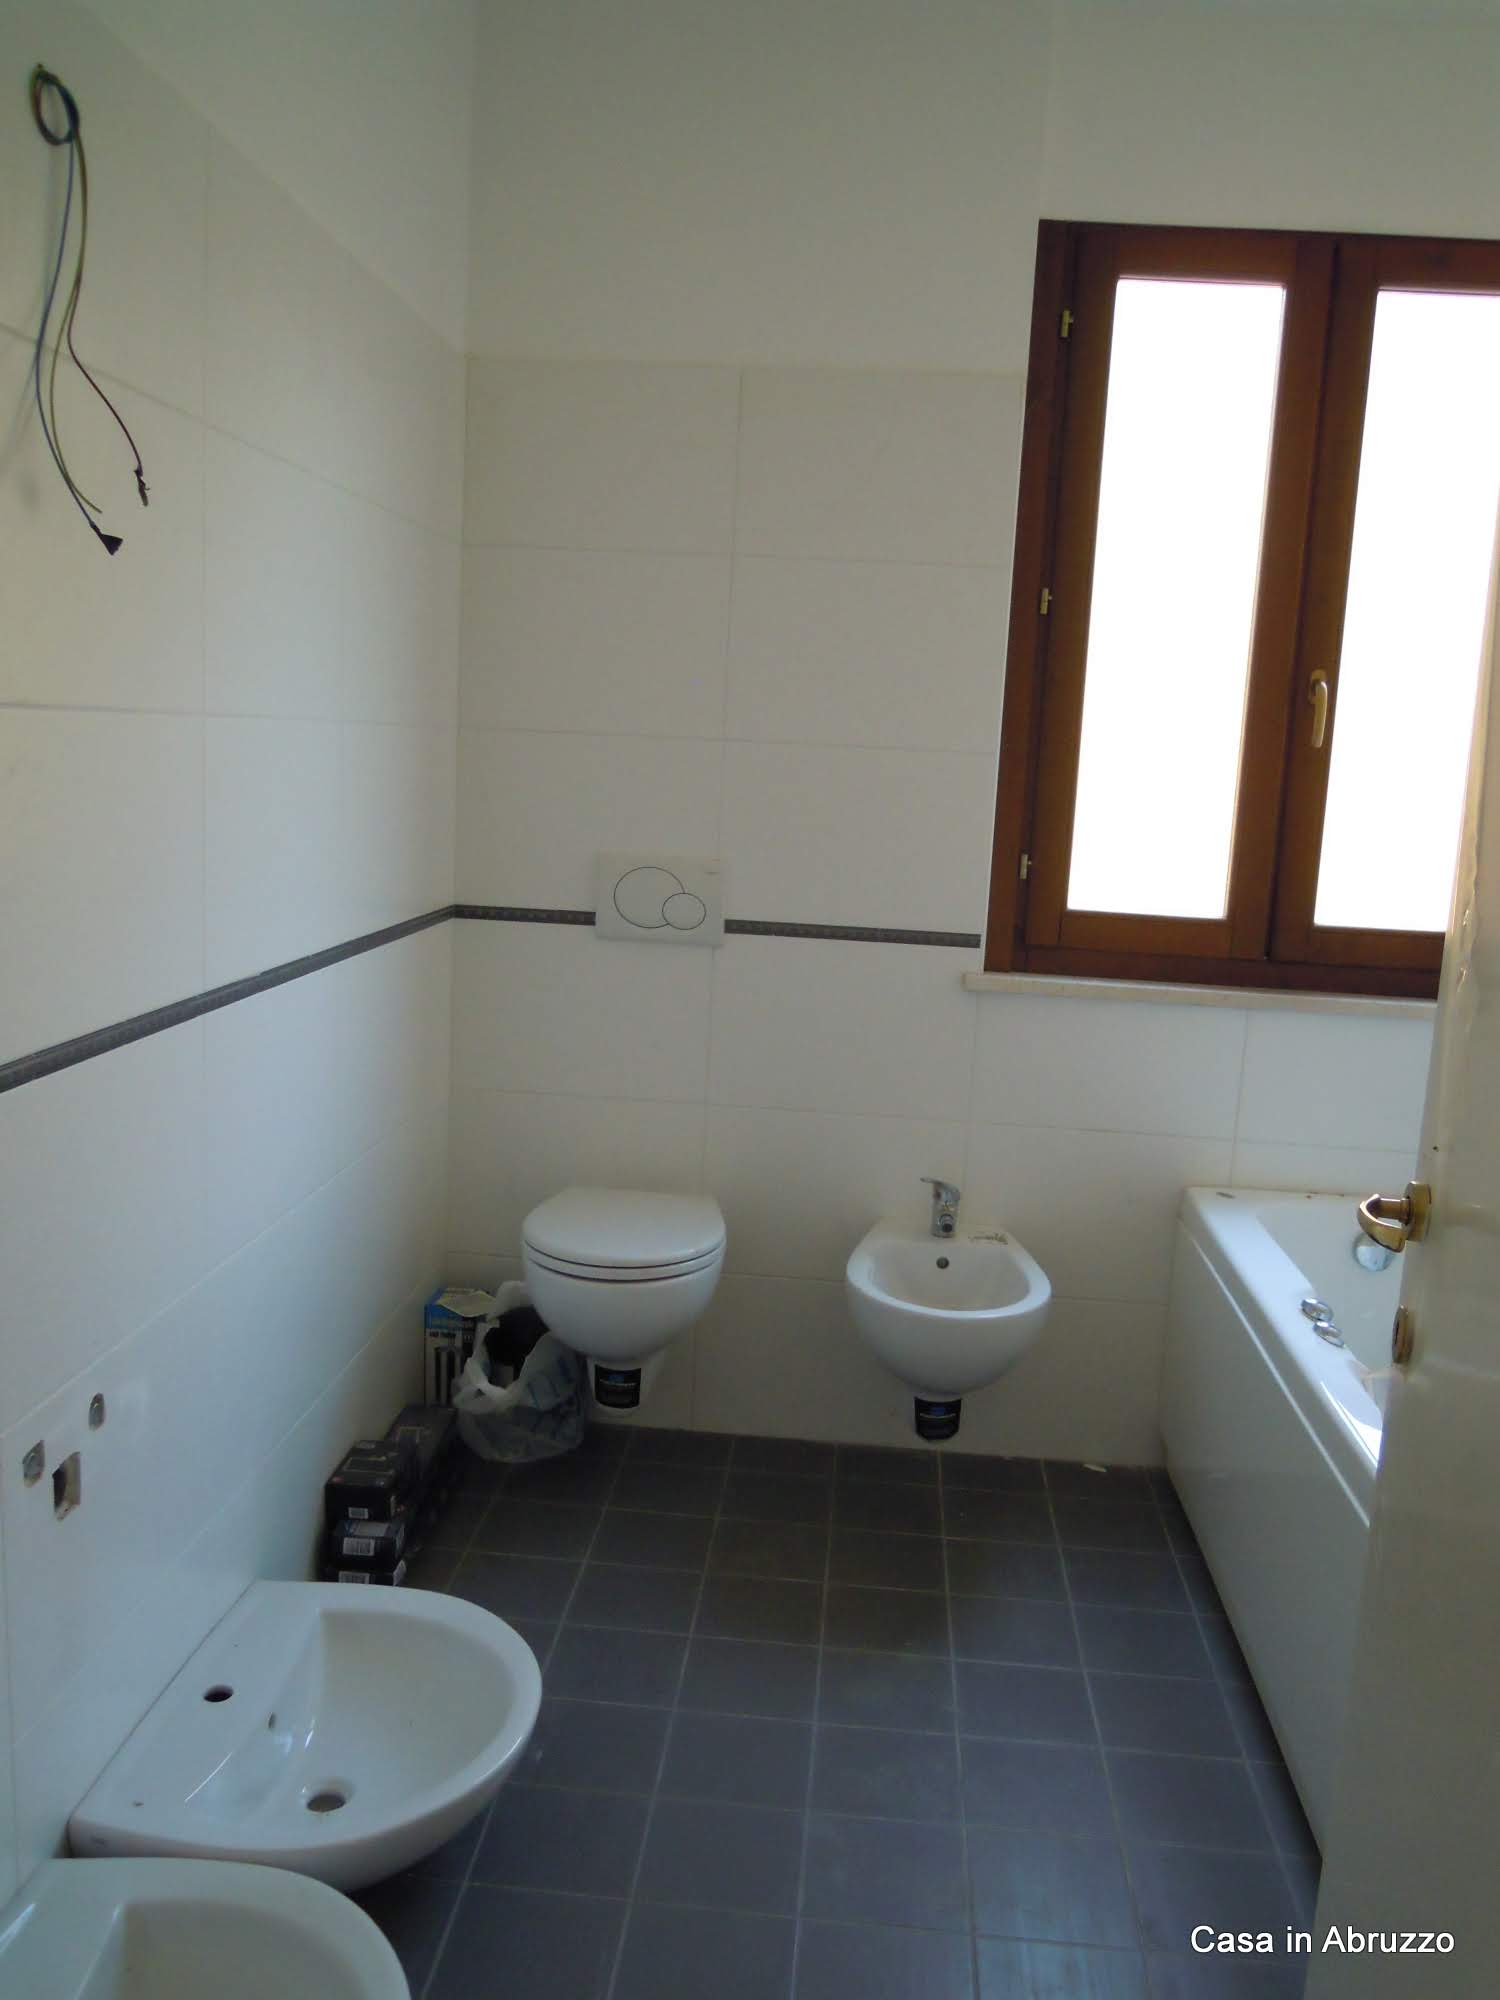 badkamer 3 met ligbad en douche, wc en toilet, 2 wastafels